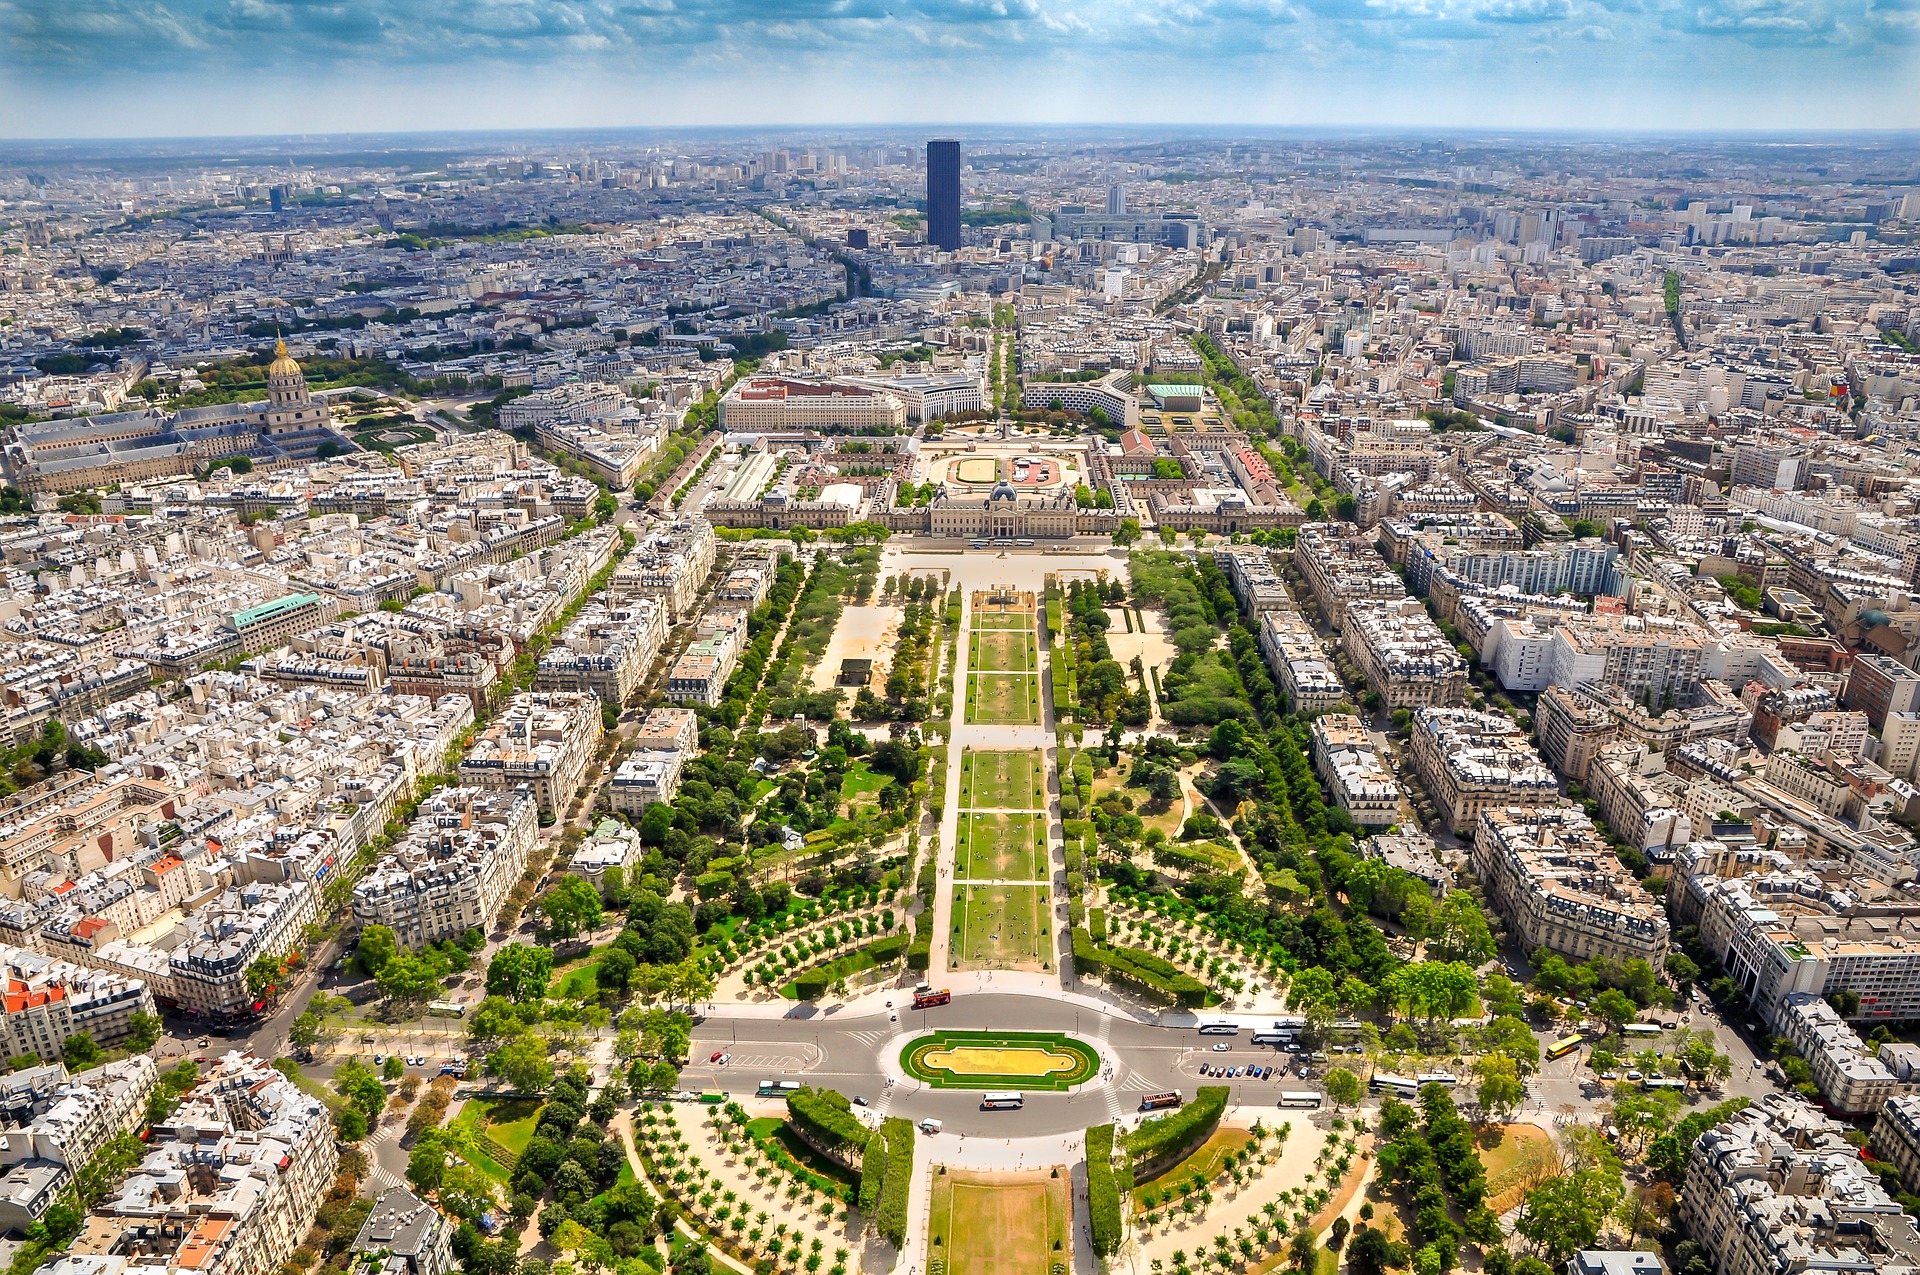 الدليل الكامل لزيارة برج إيفل في باريس , شرح الوصول للبرج و شراء التذاكر مع نصائح مفيدة